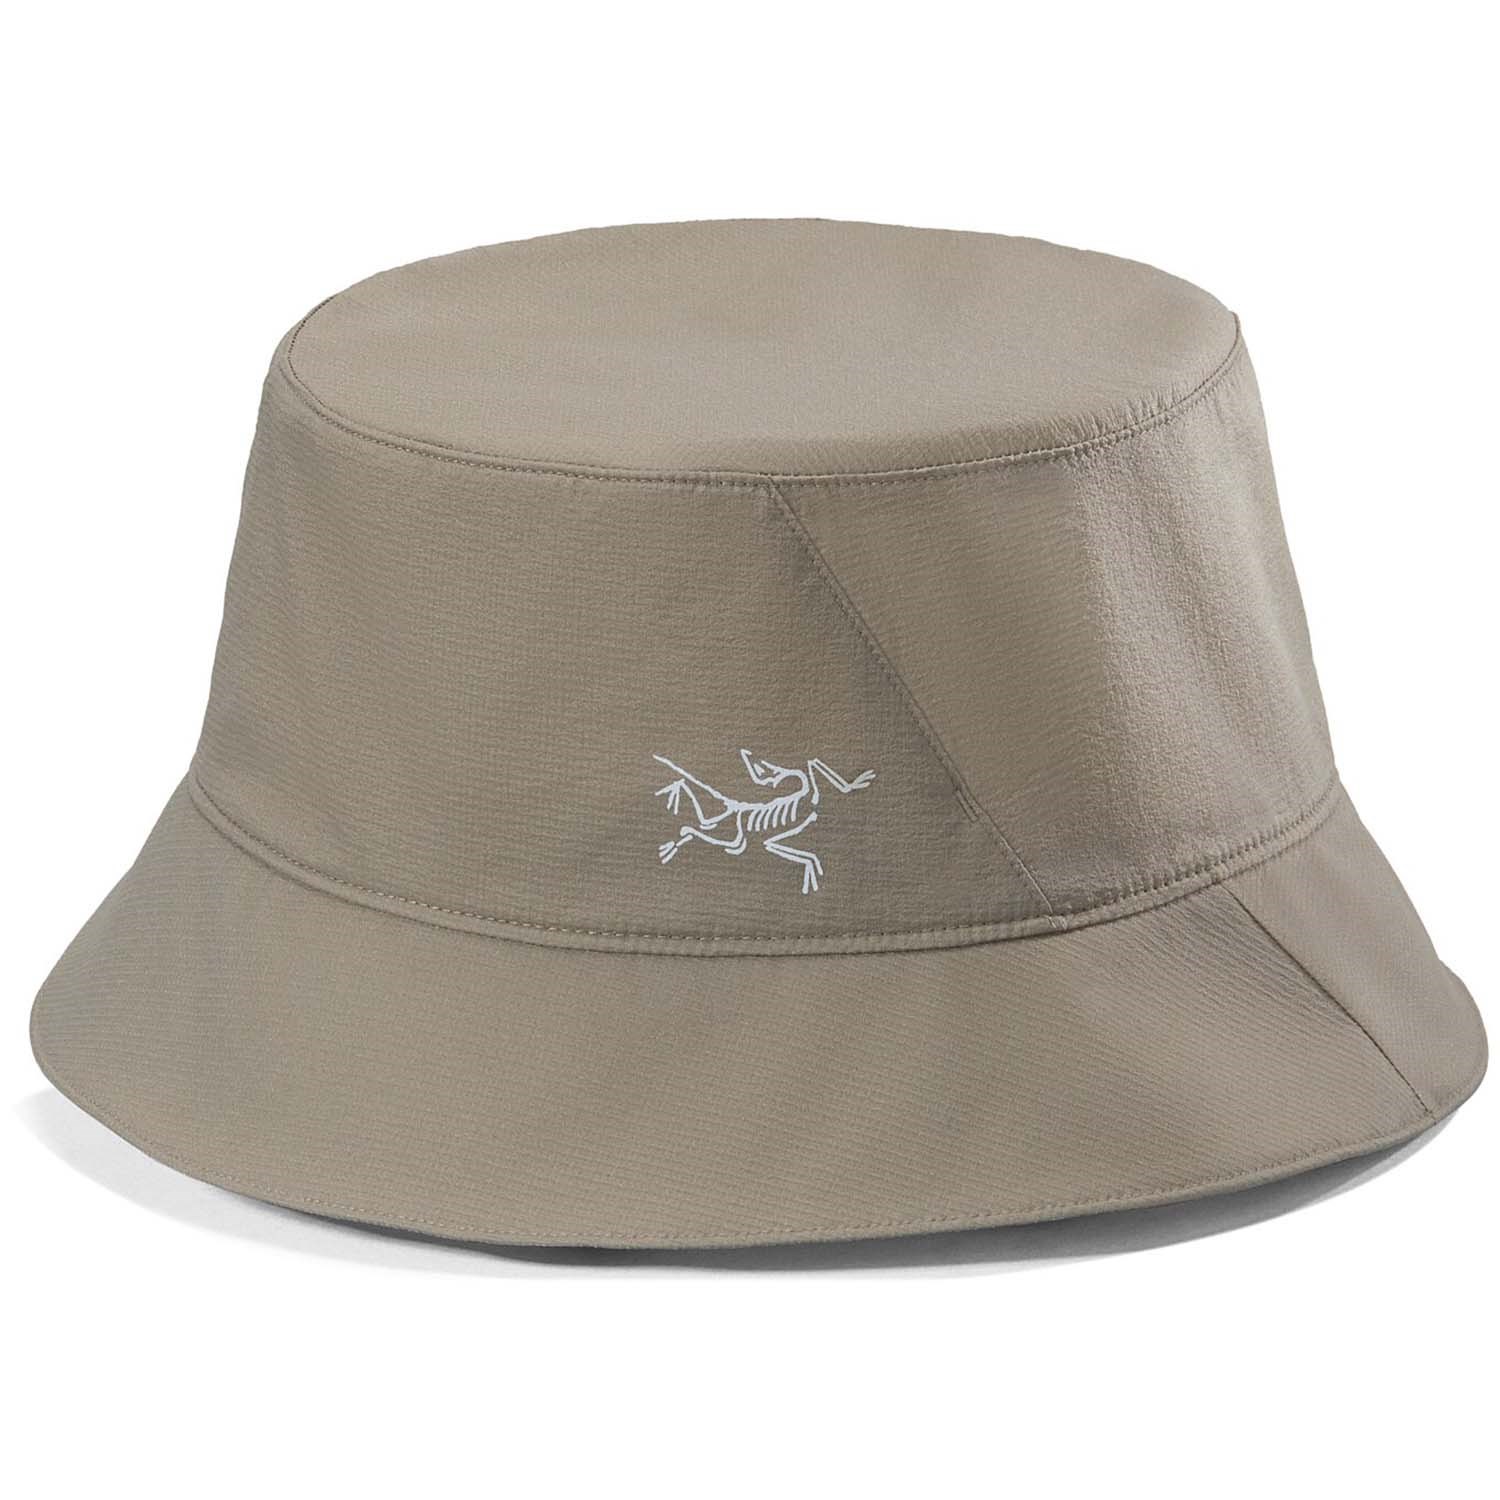 Arc'teryx Aerios Bucket Hat, Forage, Size S/M